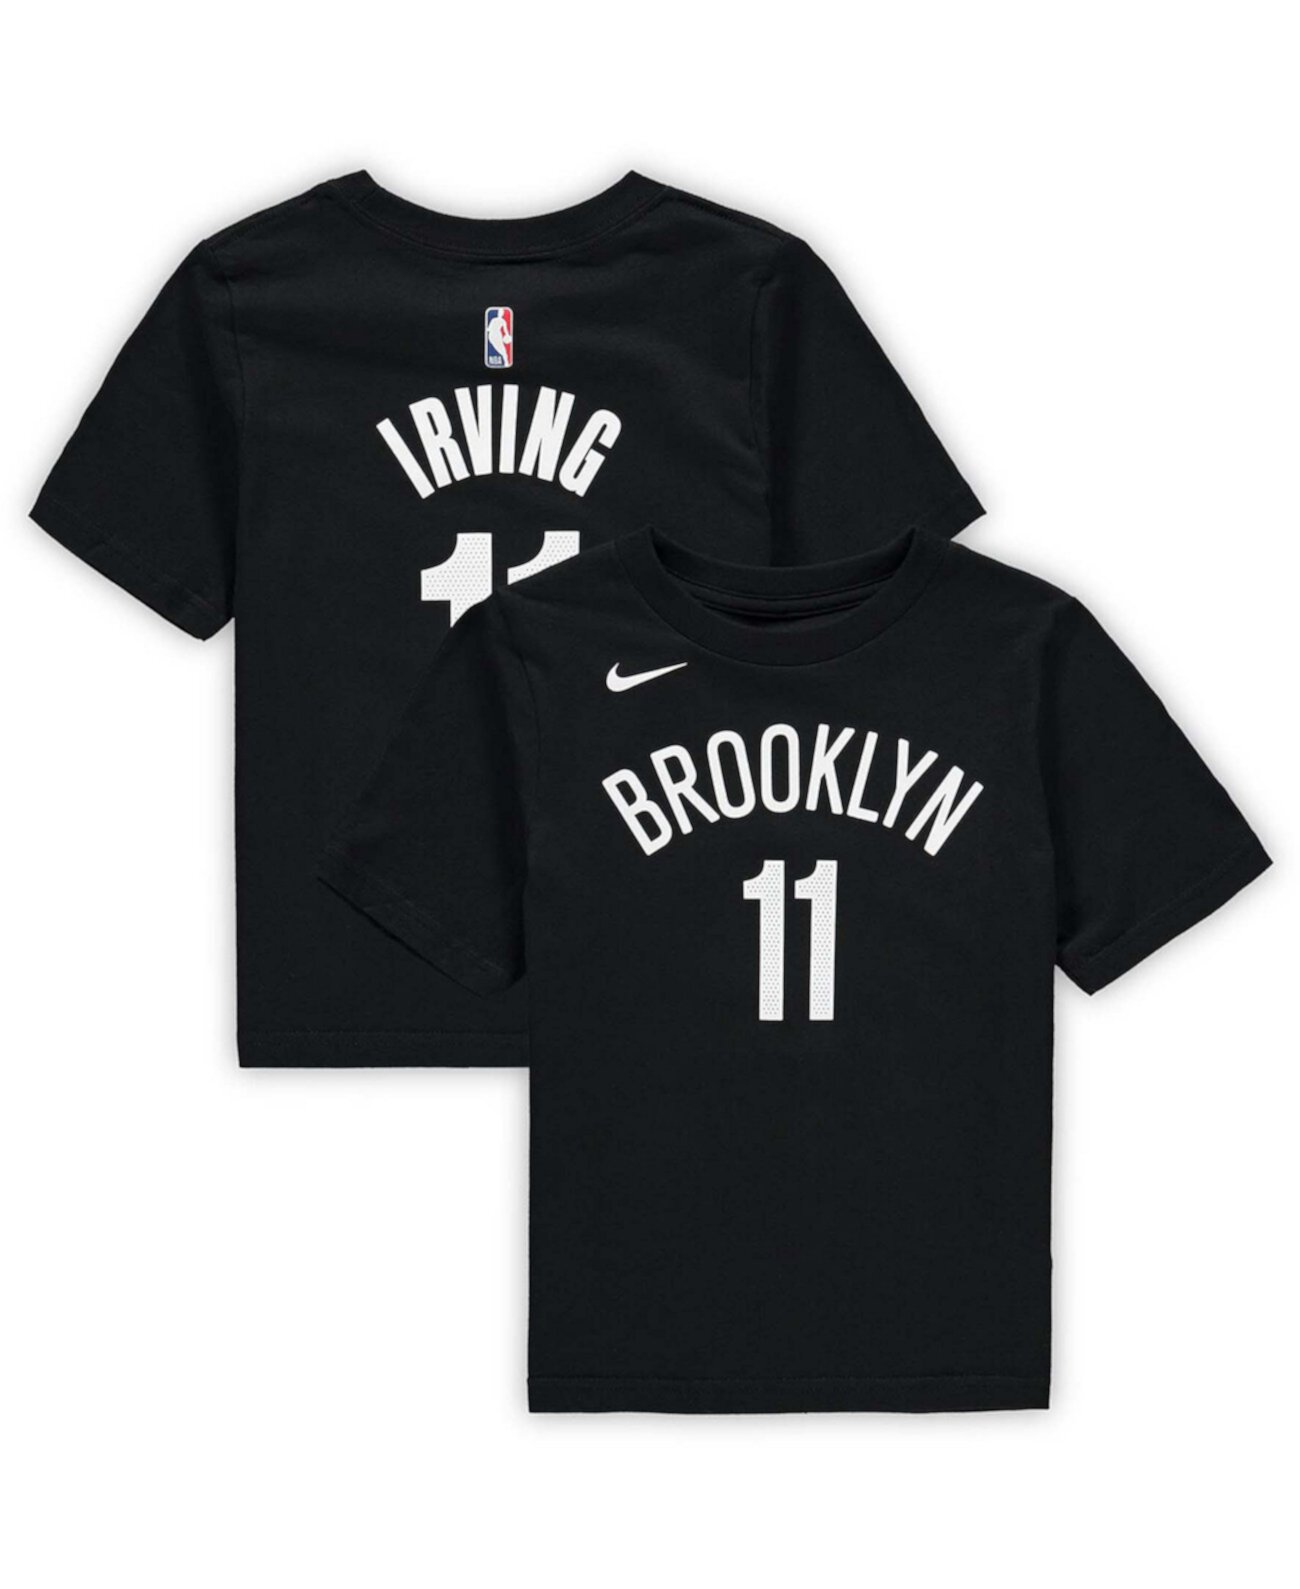 Футболка для девочек и мальчиков дошкольного возраста Kyrie Irving Black Brooklyn Nets с номером команды Nike